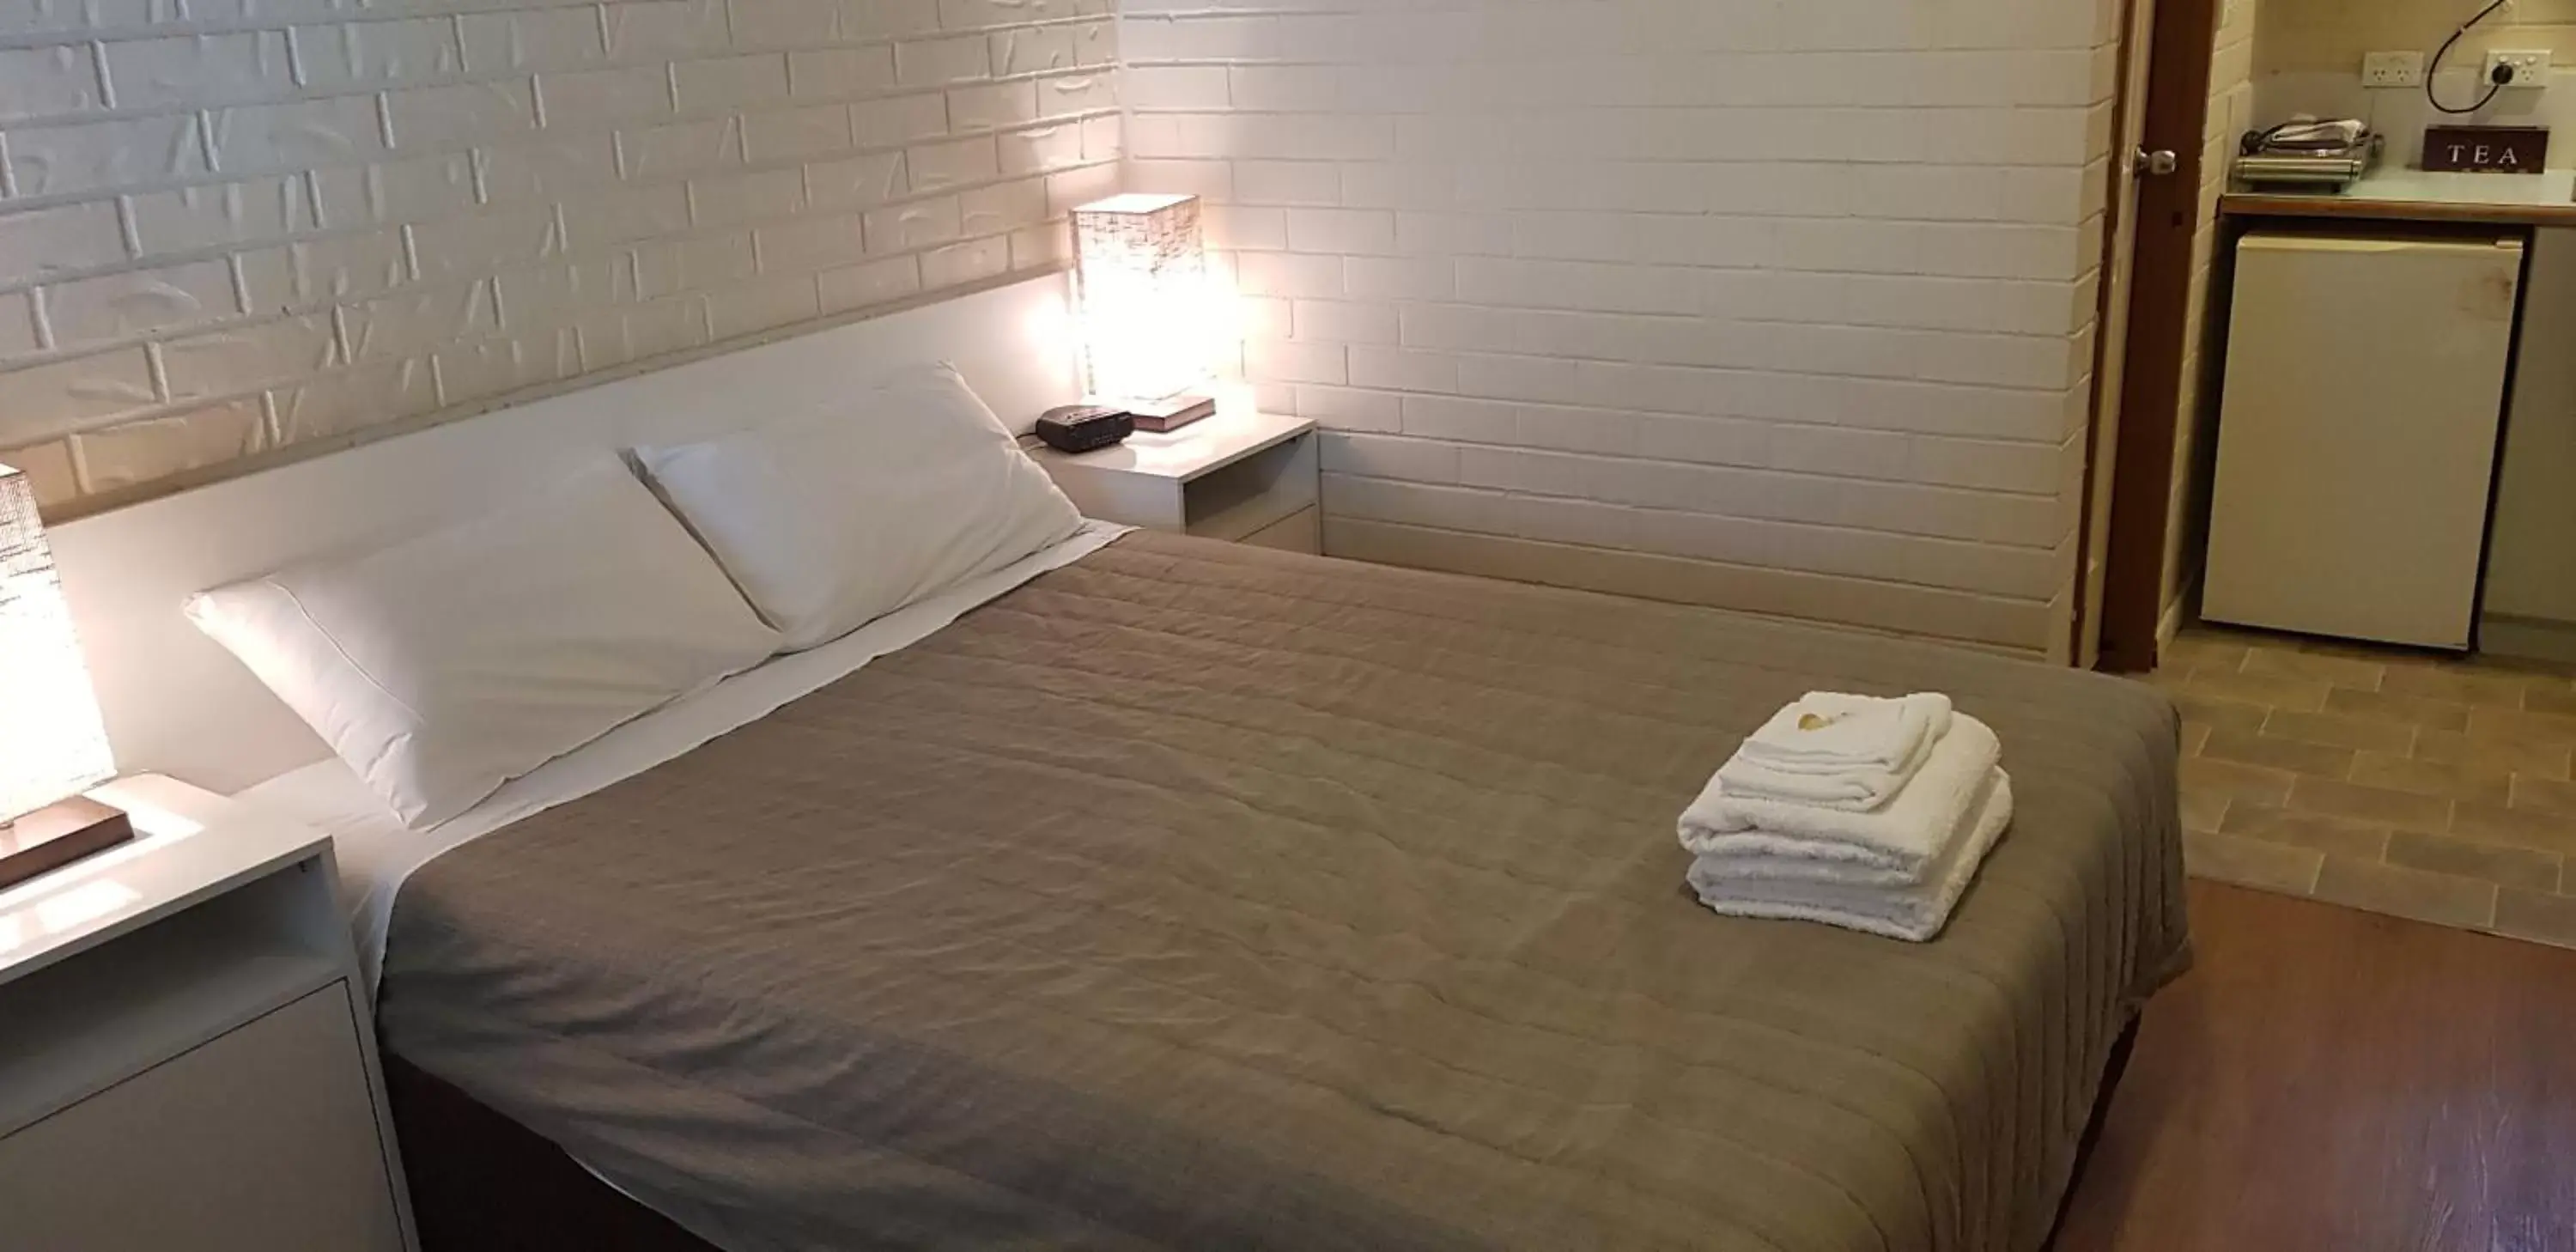 Bed in Bondi Motel